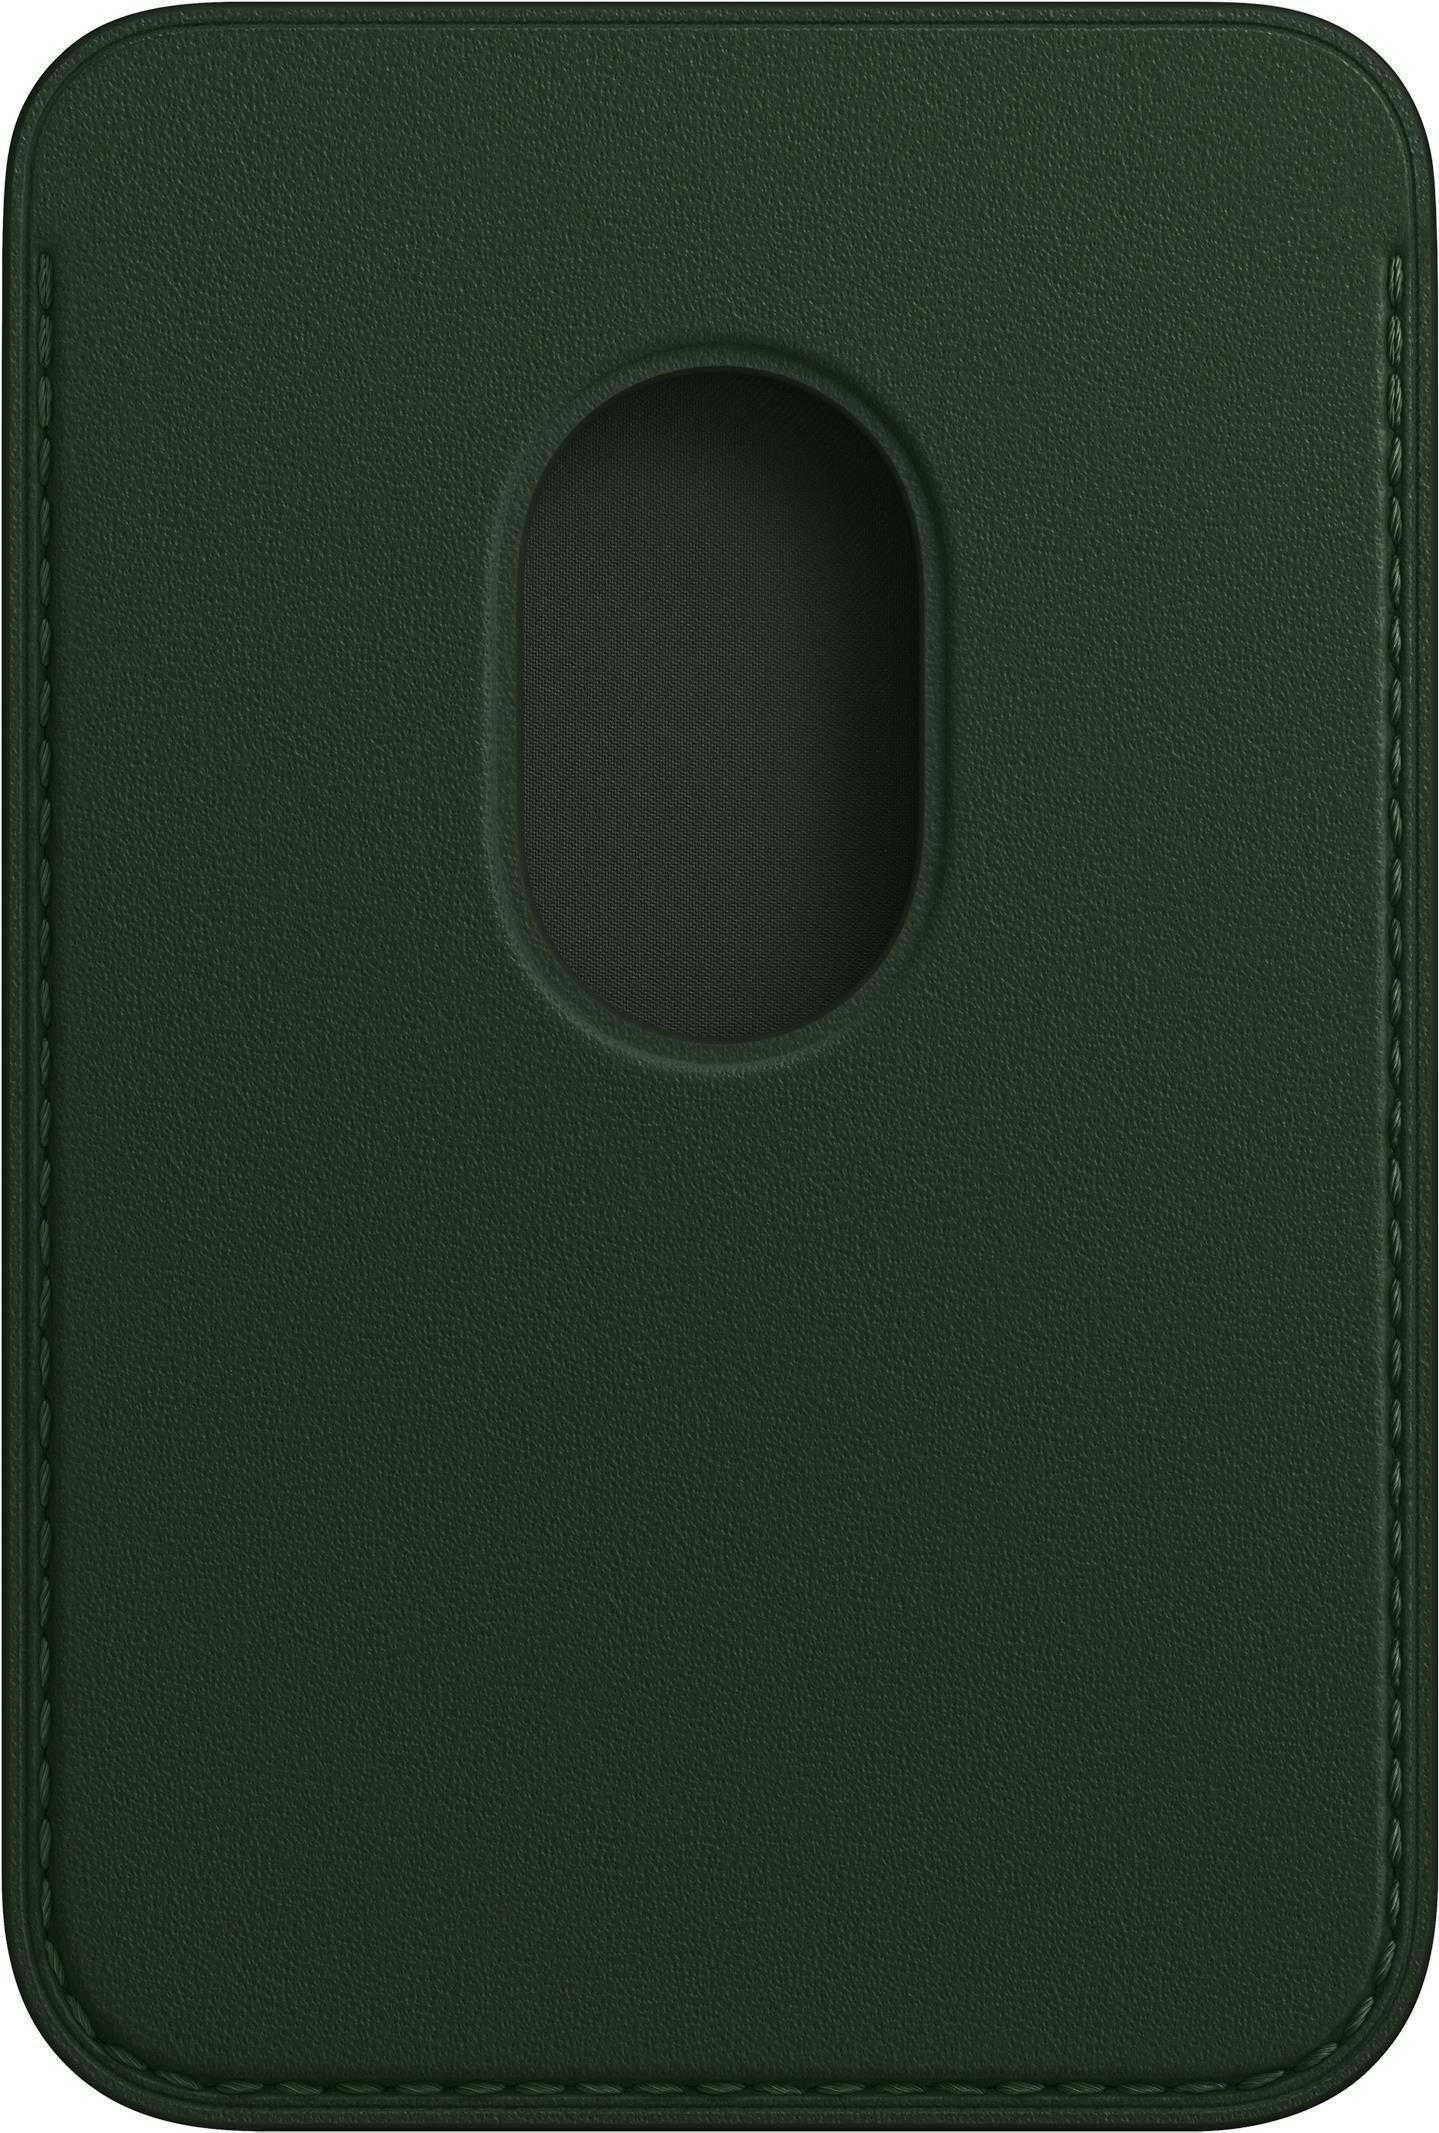 Apple - Tasche für Mobiltelefon / Kreditkarte - mit MagSafe - Leder - sequoia green - für iPhone 13, 13 mini, 13 Pro, 13 Pro Max (MM0X3ZM/A)